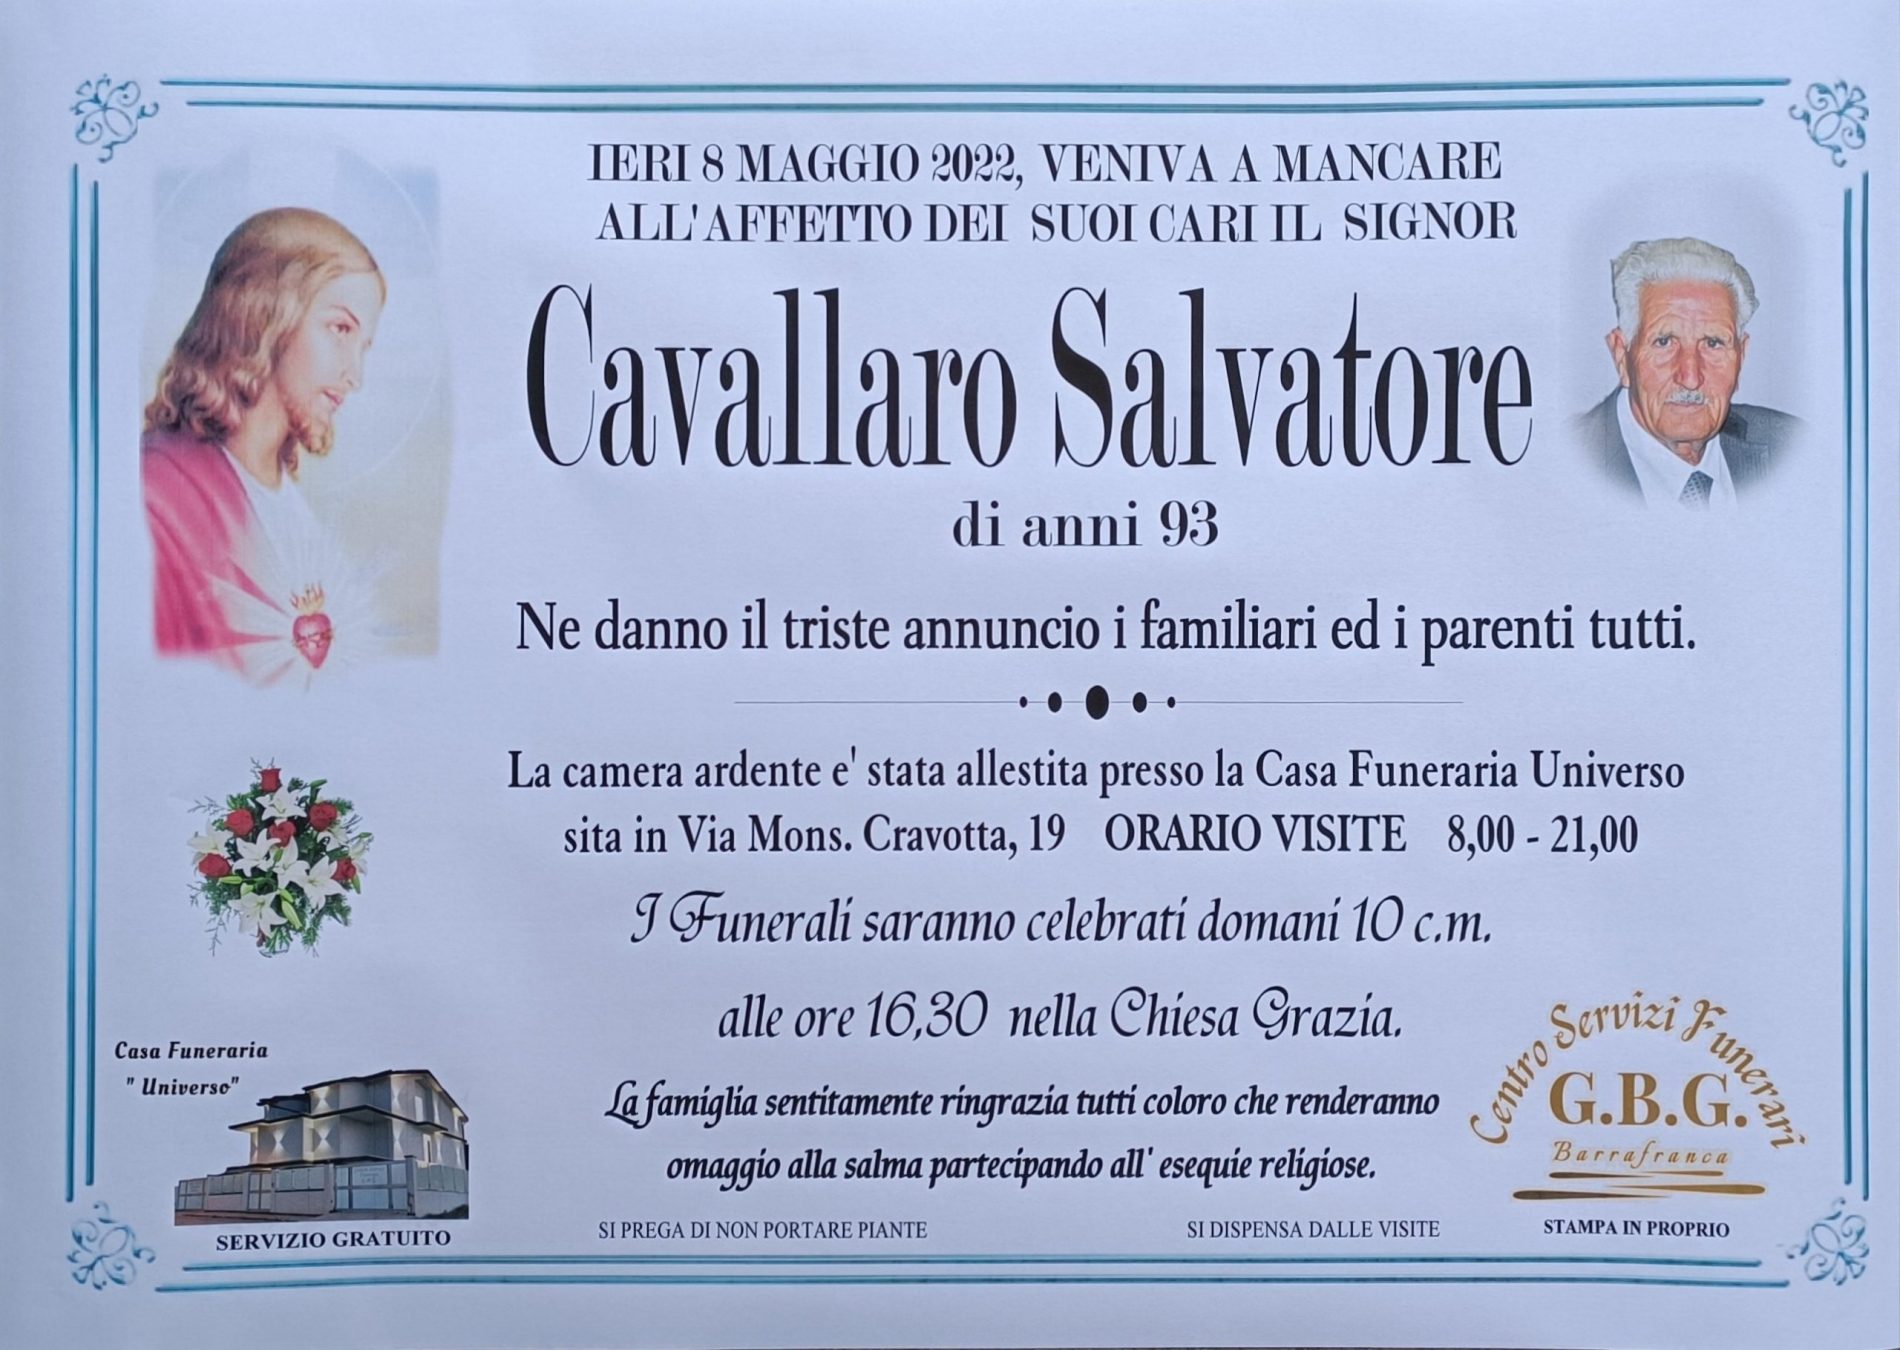 Annuncio servizi funerari agenzia G.B.G. sig Cavallaro Salvatore di anni 93